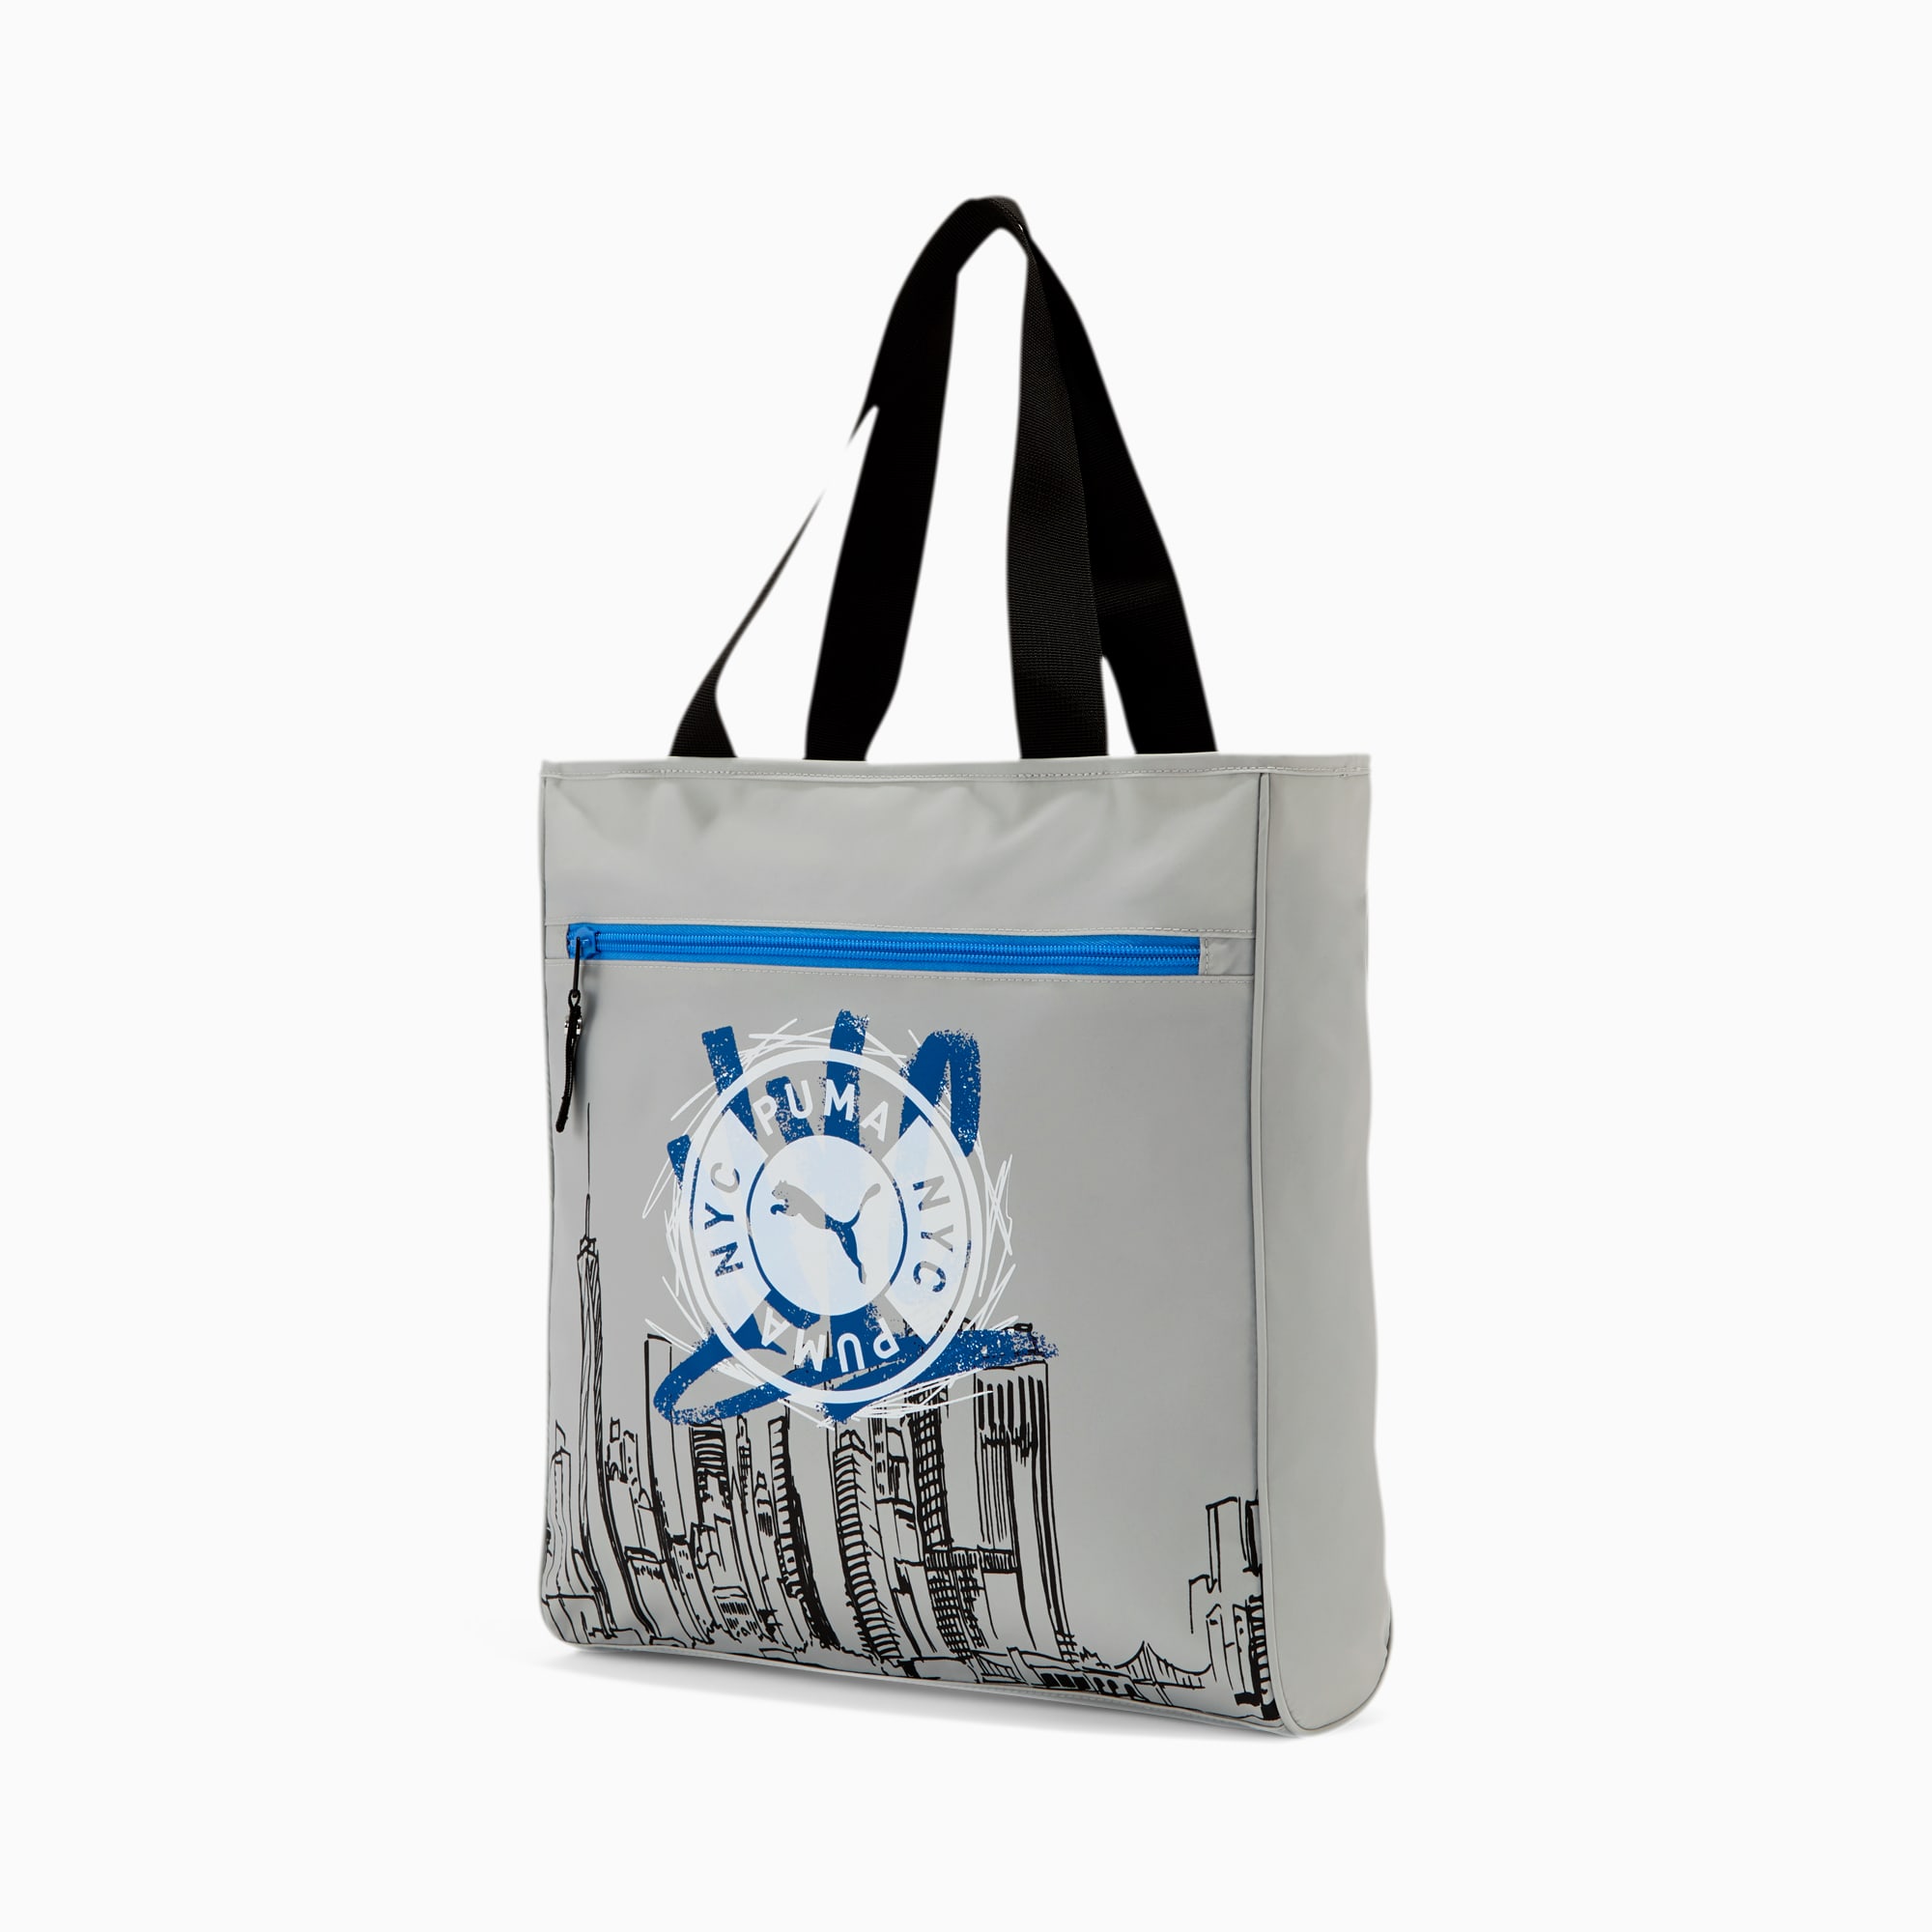 puma carry bags